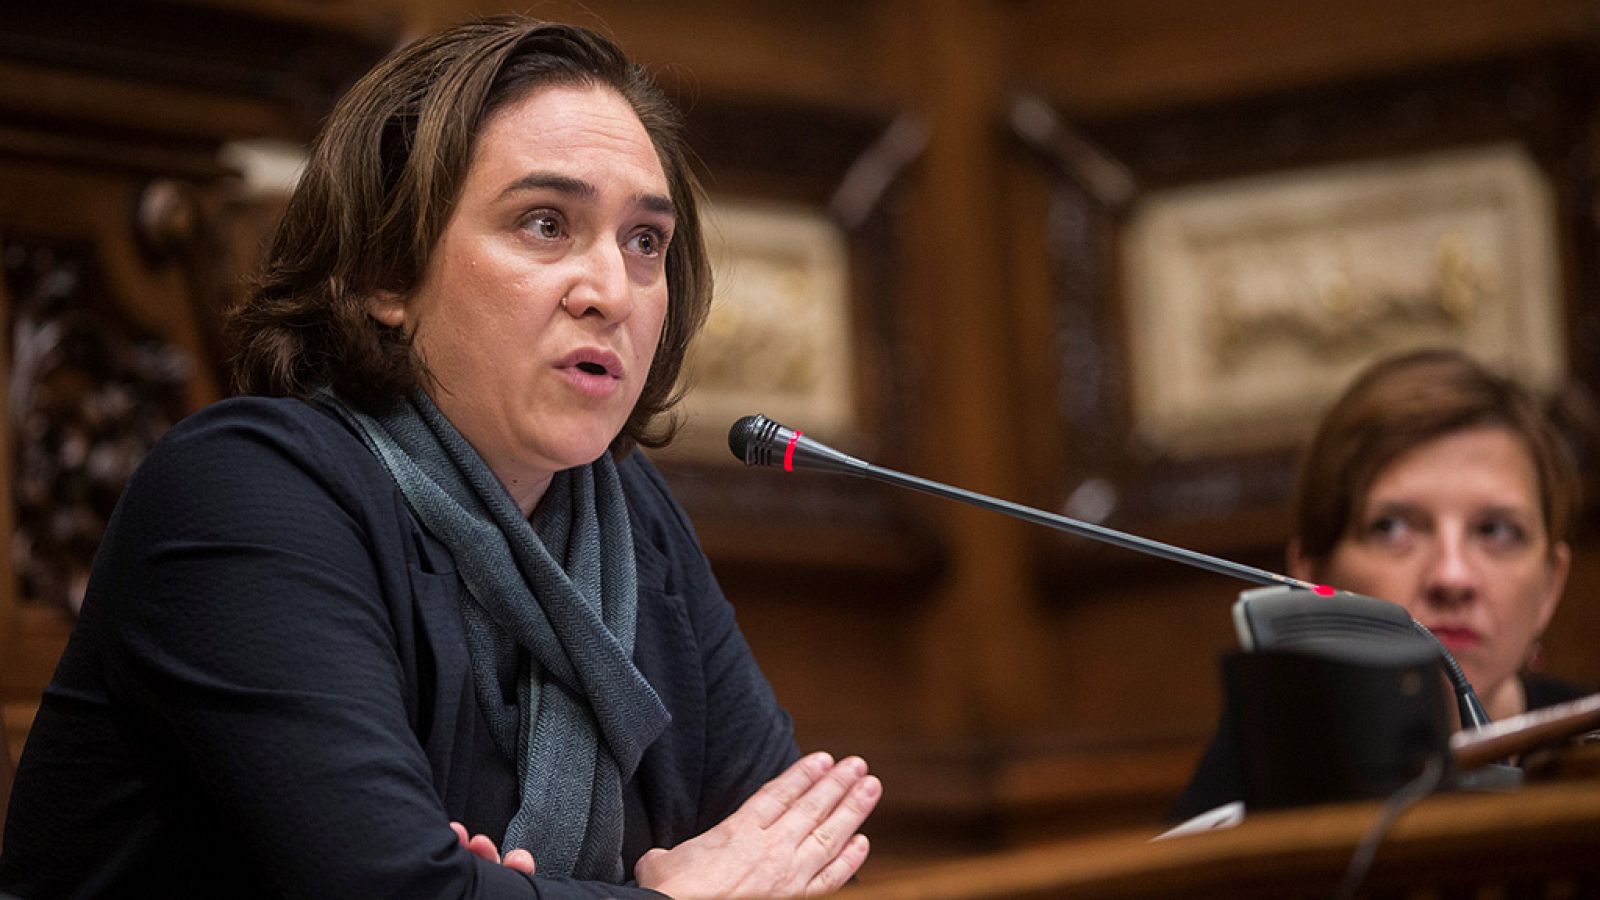 La coordinadora de BComú ha propuesto que Ada Colau presente su candidatura a la investidura como alcaldesa de Barcelona